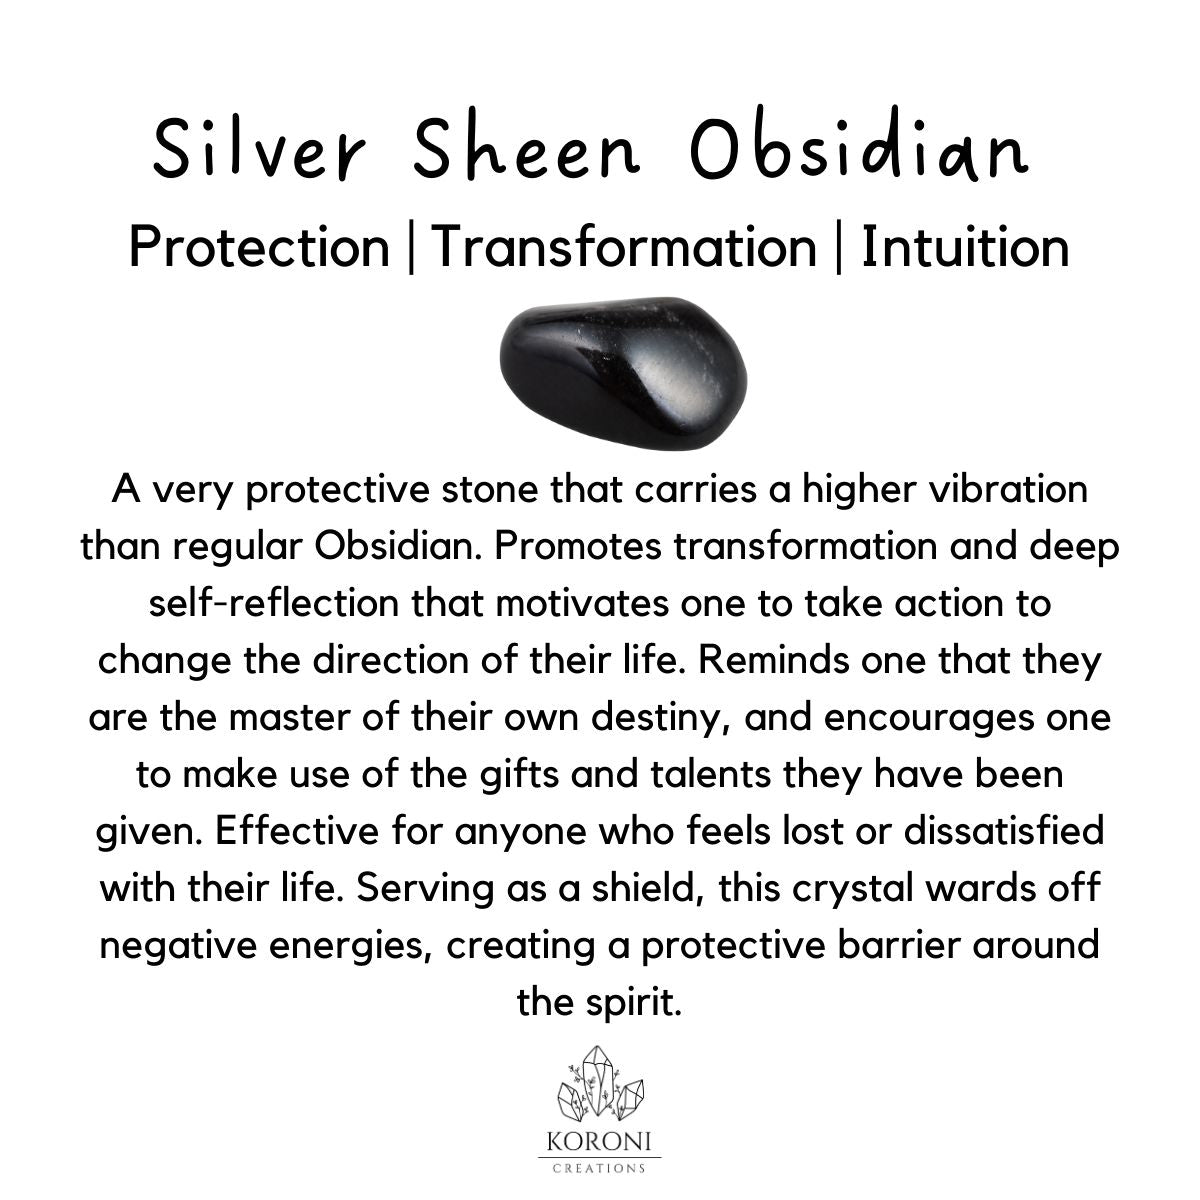 Silver sheen Obsidian bracelet benefits.